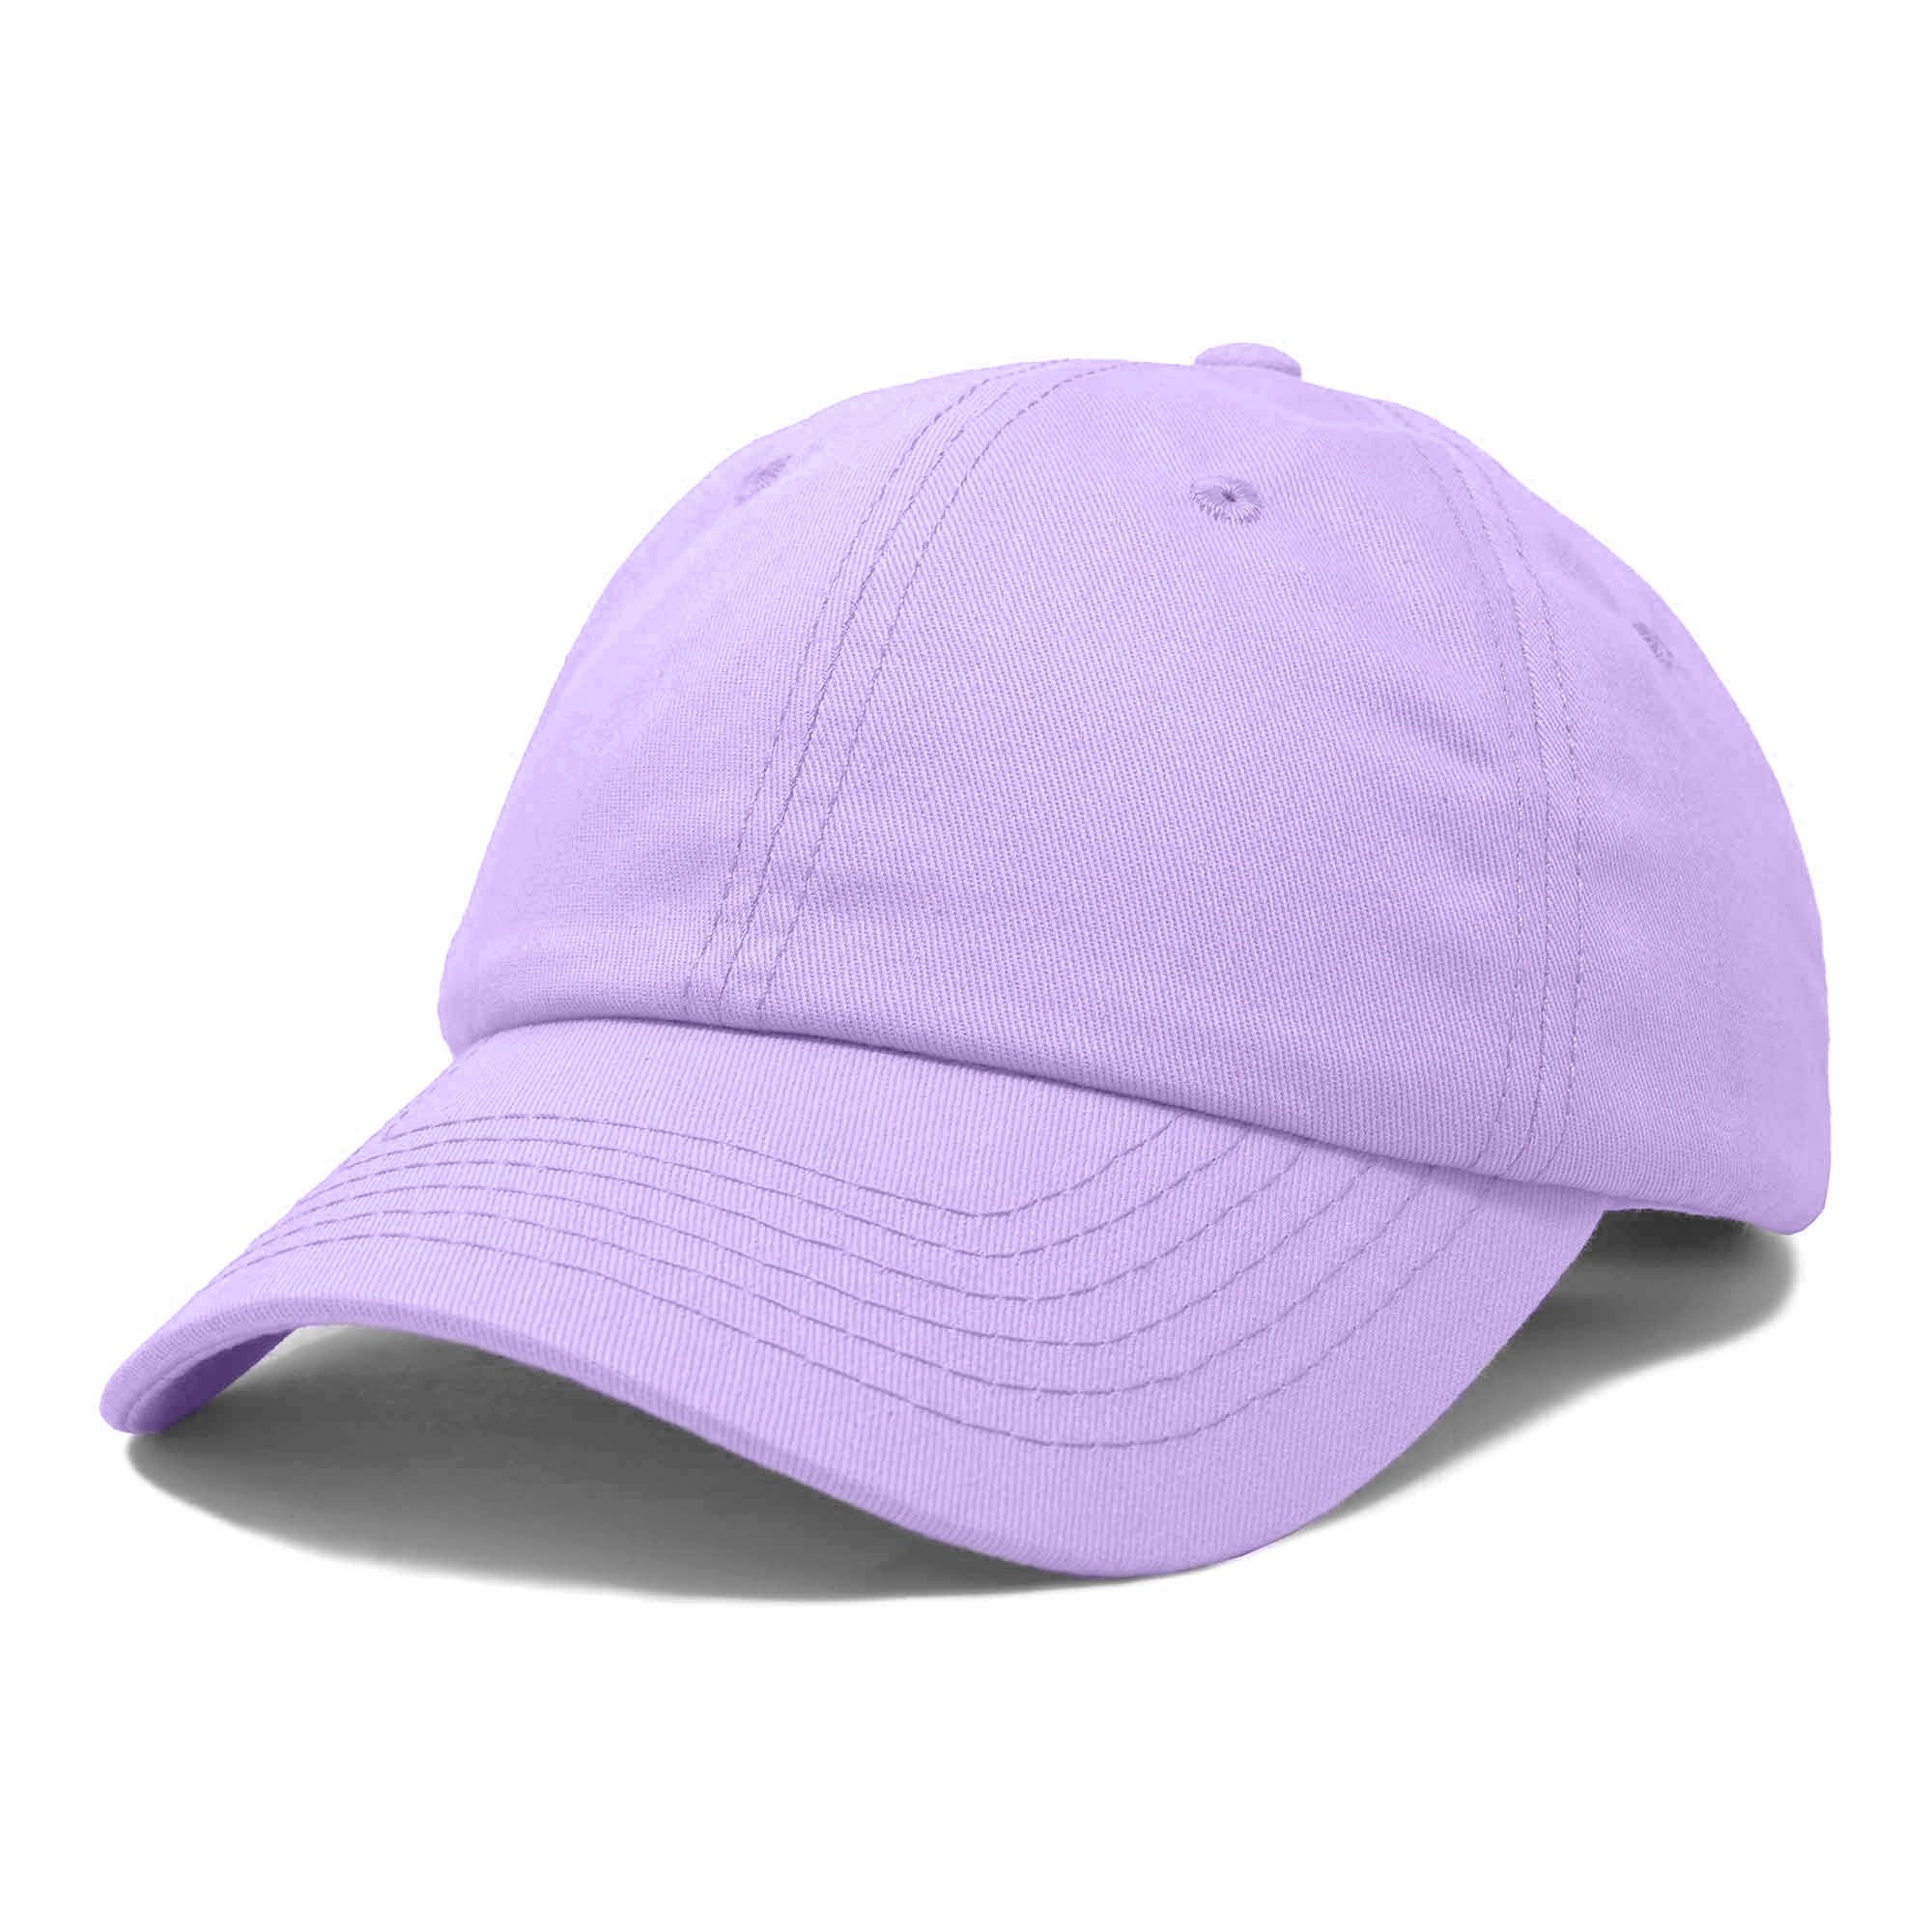 DALIX Womens Hat Lightweight 100% Cotton Cap in Lavender | Walmart (US)